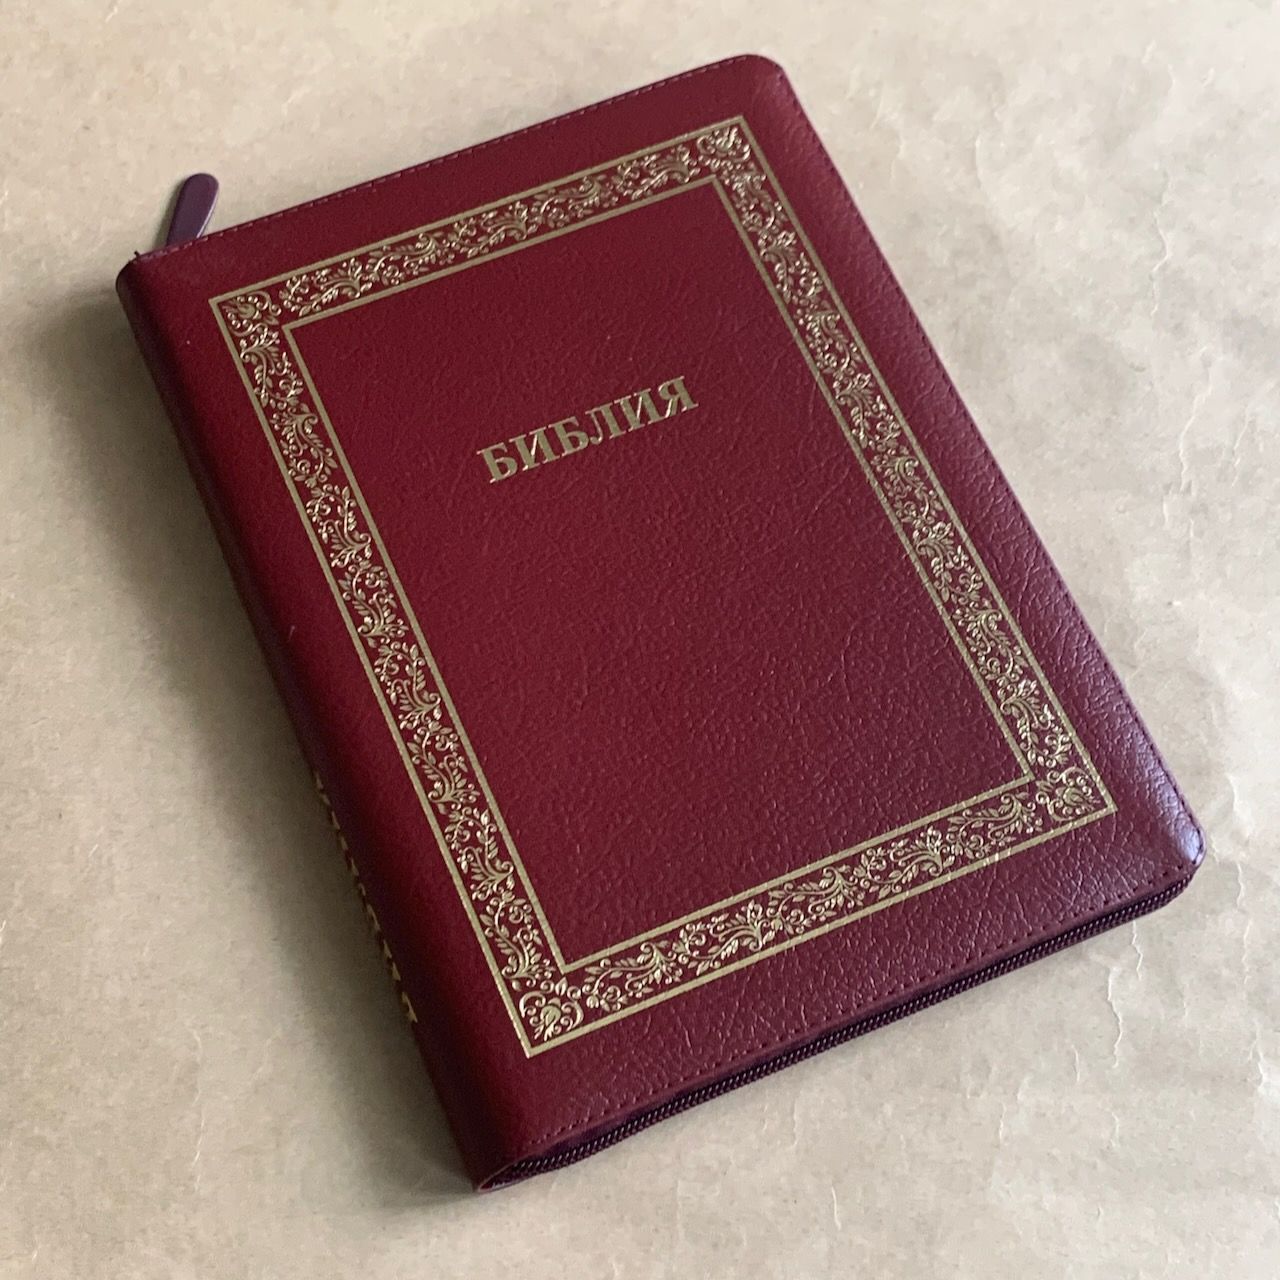 Библия 076z код B4, дизайн "золотая рамка растительный орнамент", кожаный переплет на молнии, цвет бордо пятнистый, размер 180x243 мм